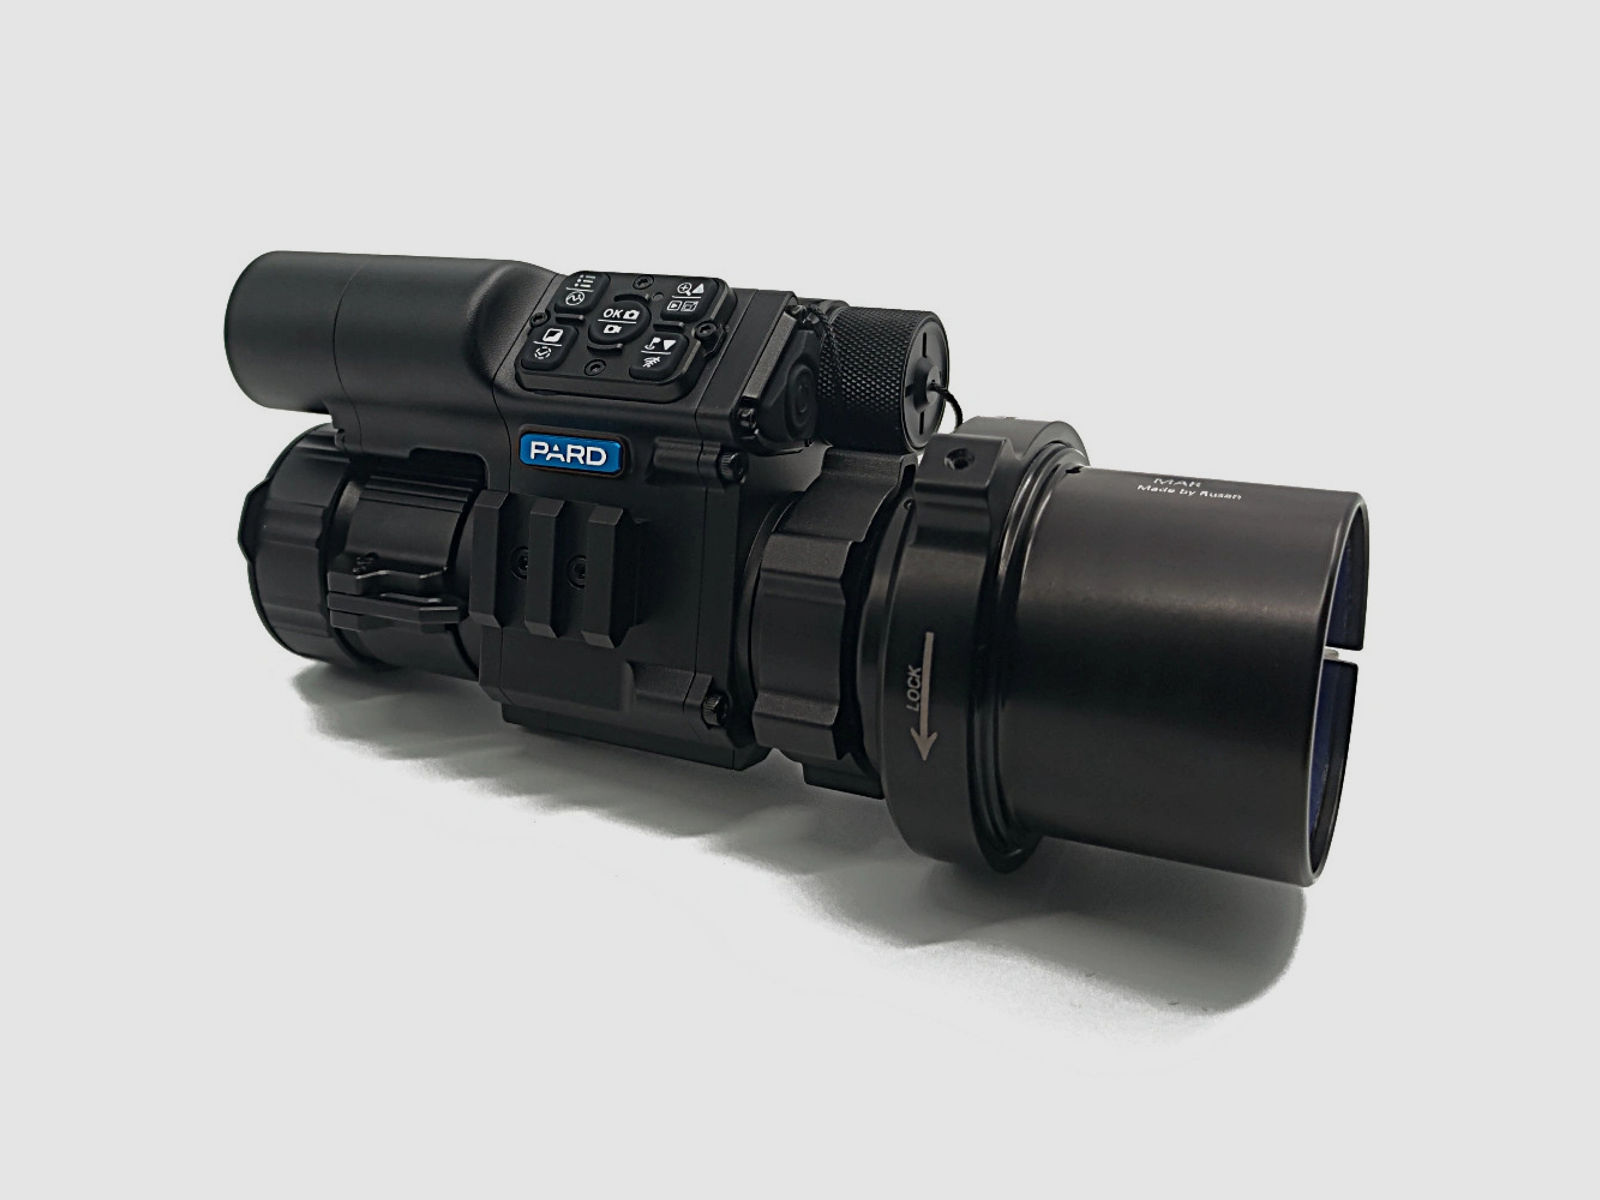 PARD FD1 Nachtsicht 3 in 1 Vorsatz, Monokular & Zielfernrohr - 940 nm mit LRF 63 mm RUSAN MAR + RUSAN MCR